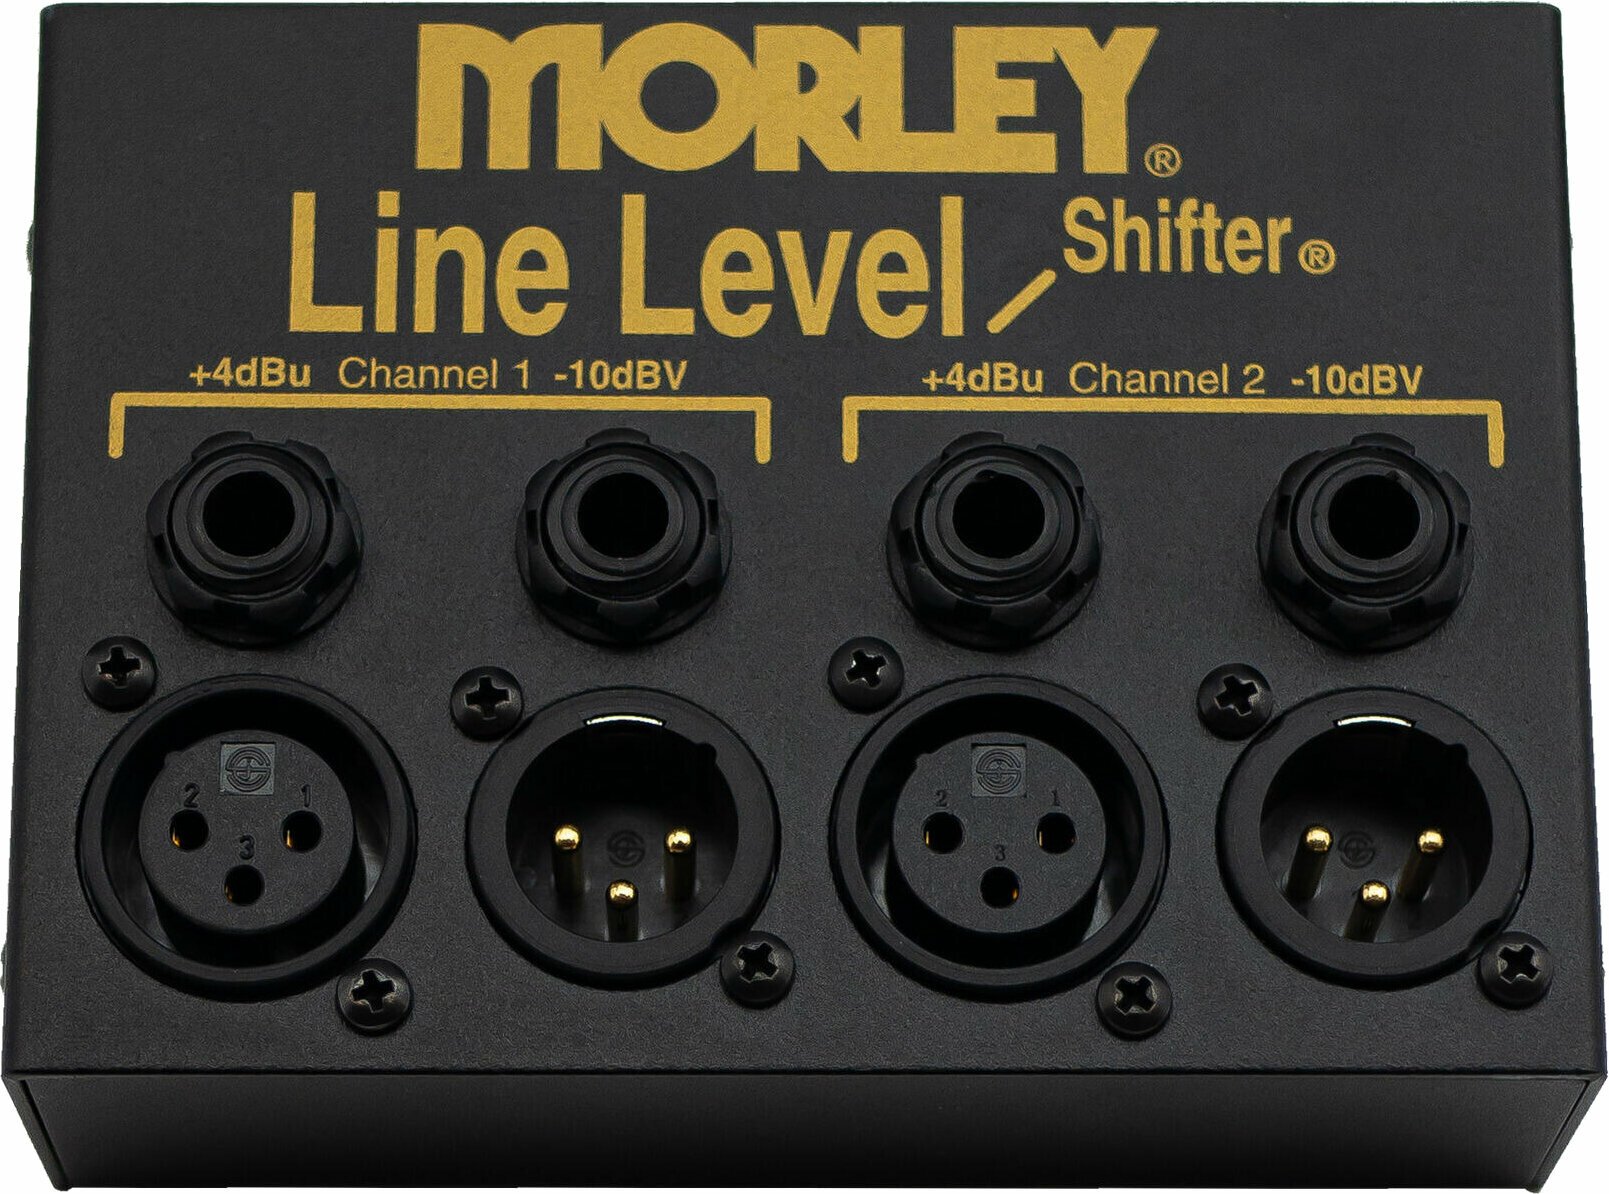 Accesorios Morley Line Level Shifter (Recién desempaquetado)